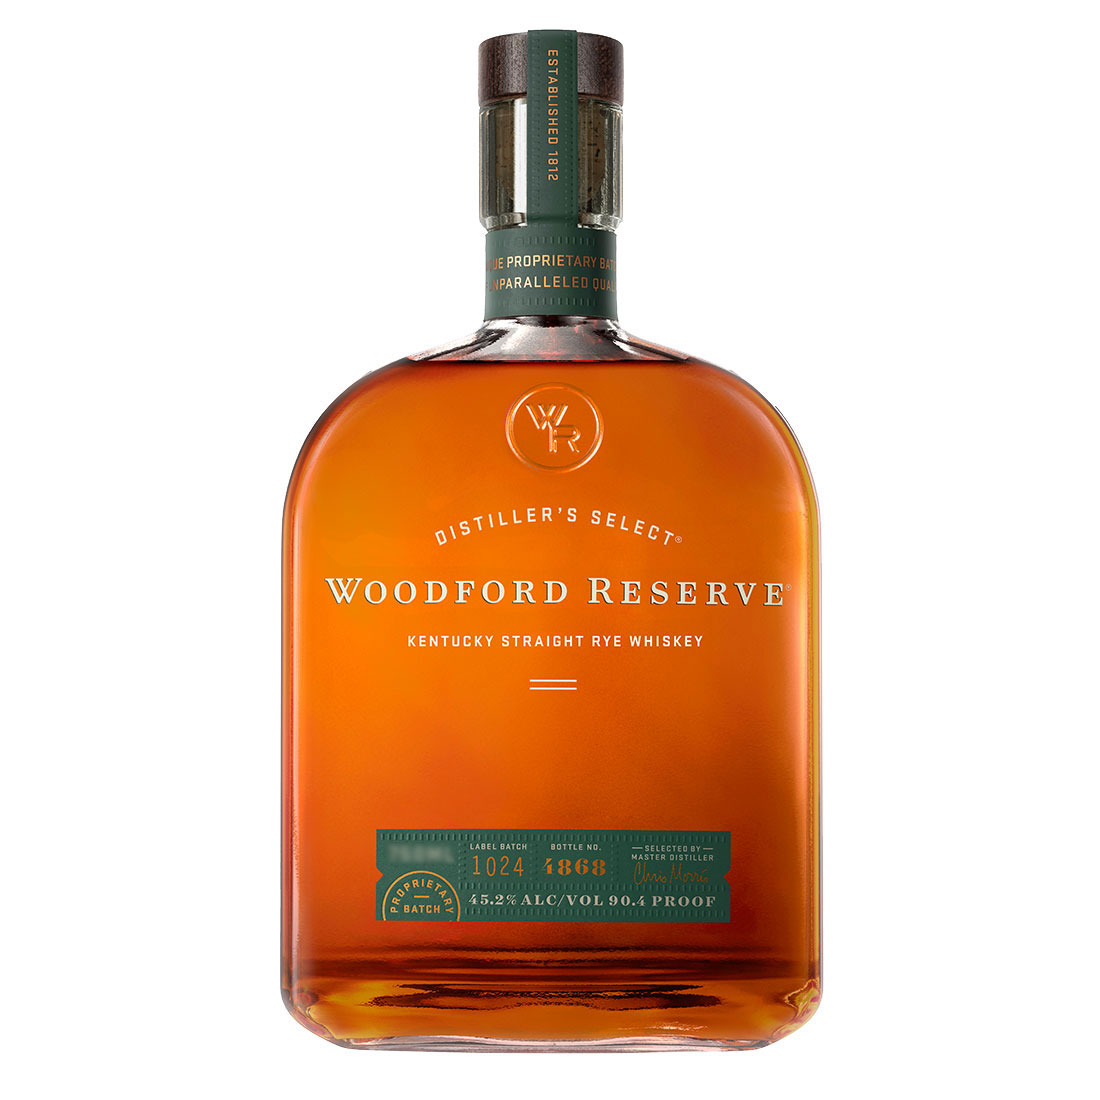 LB_Bottle-Woodford-Reserve-Kentucky-Straight-Rye